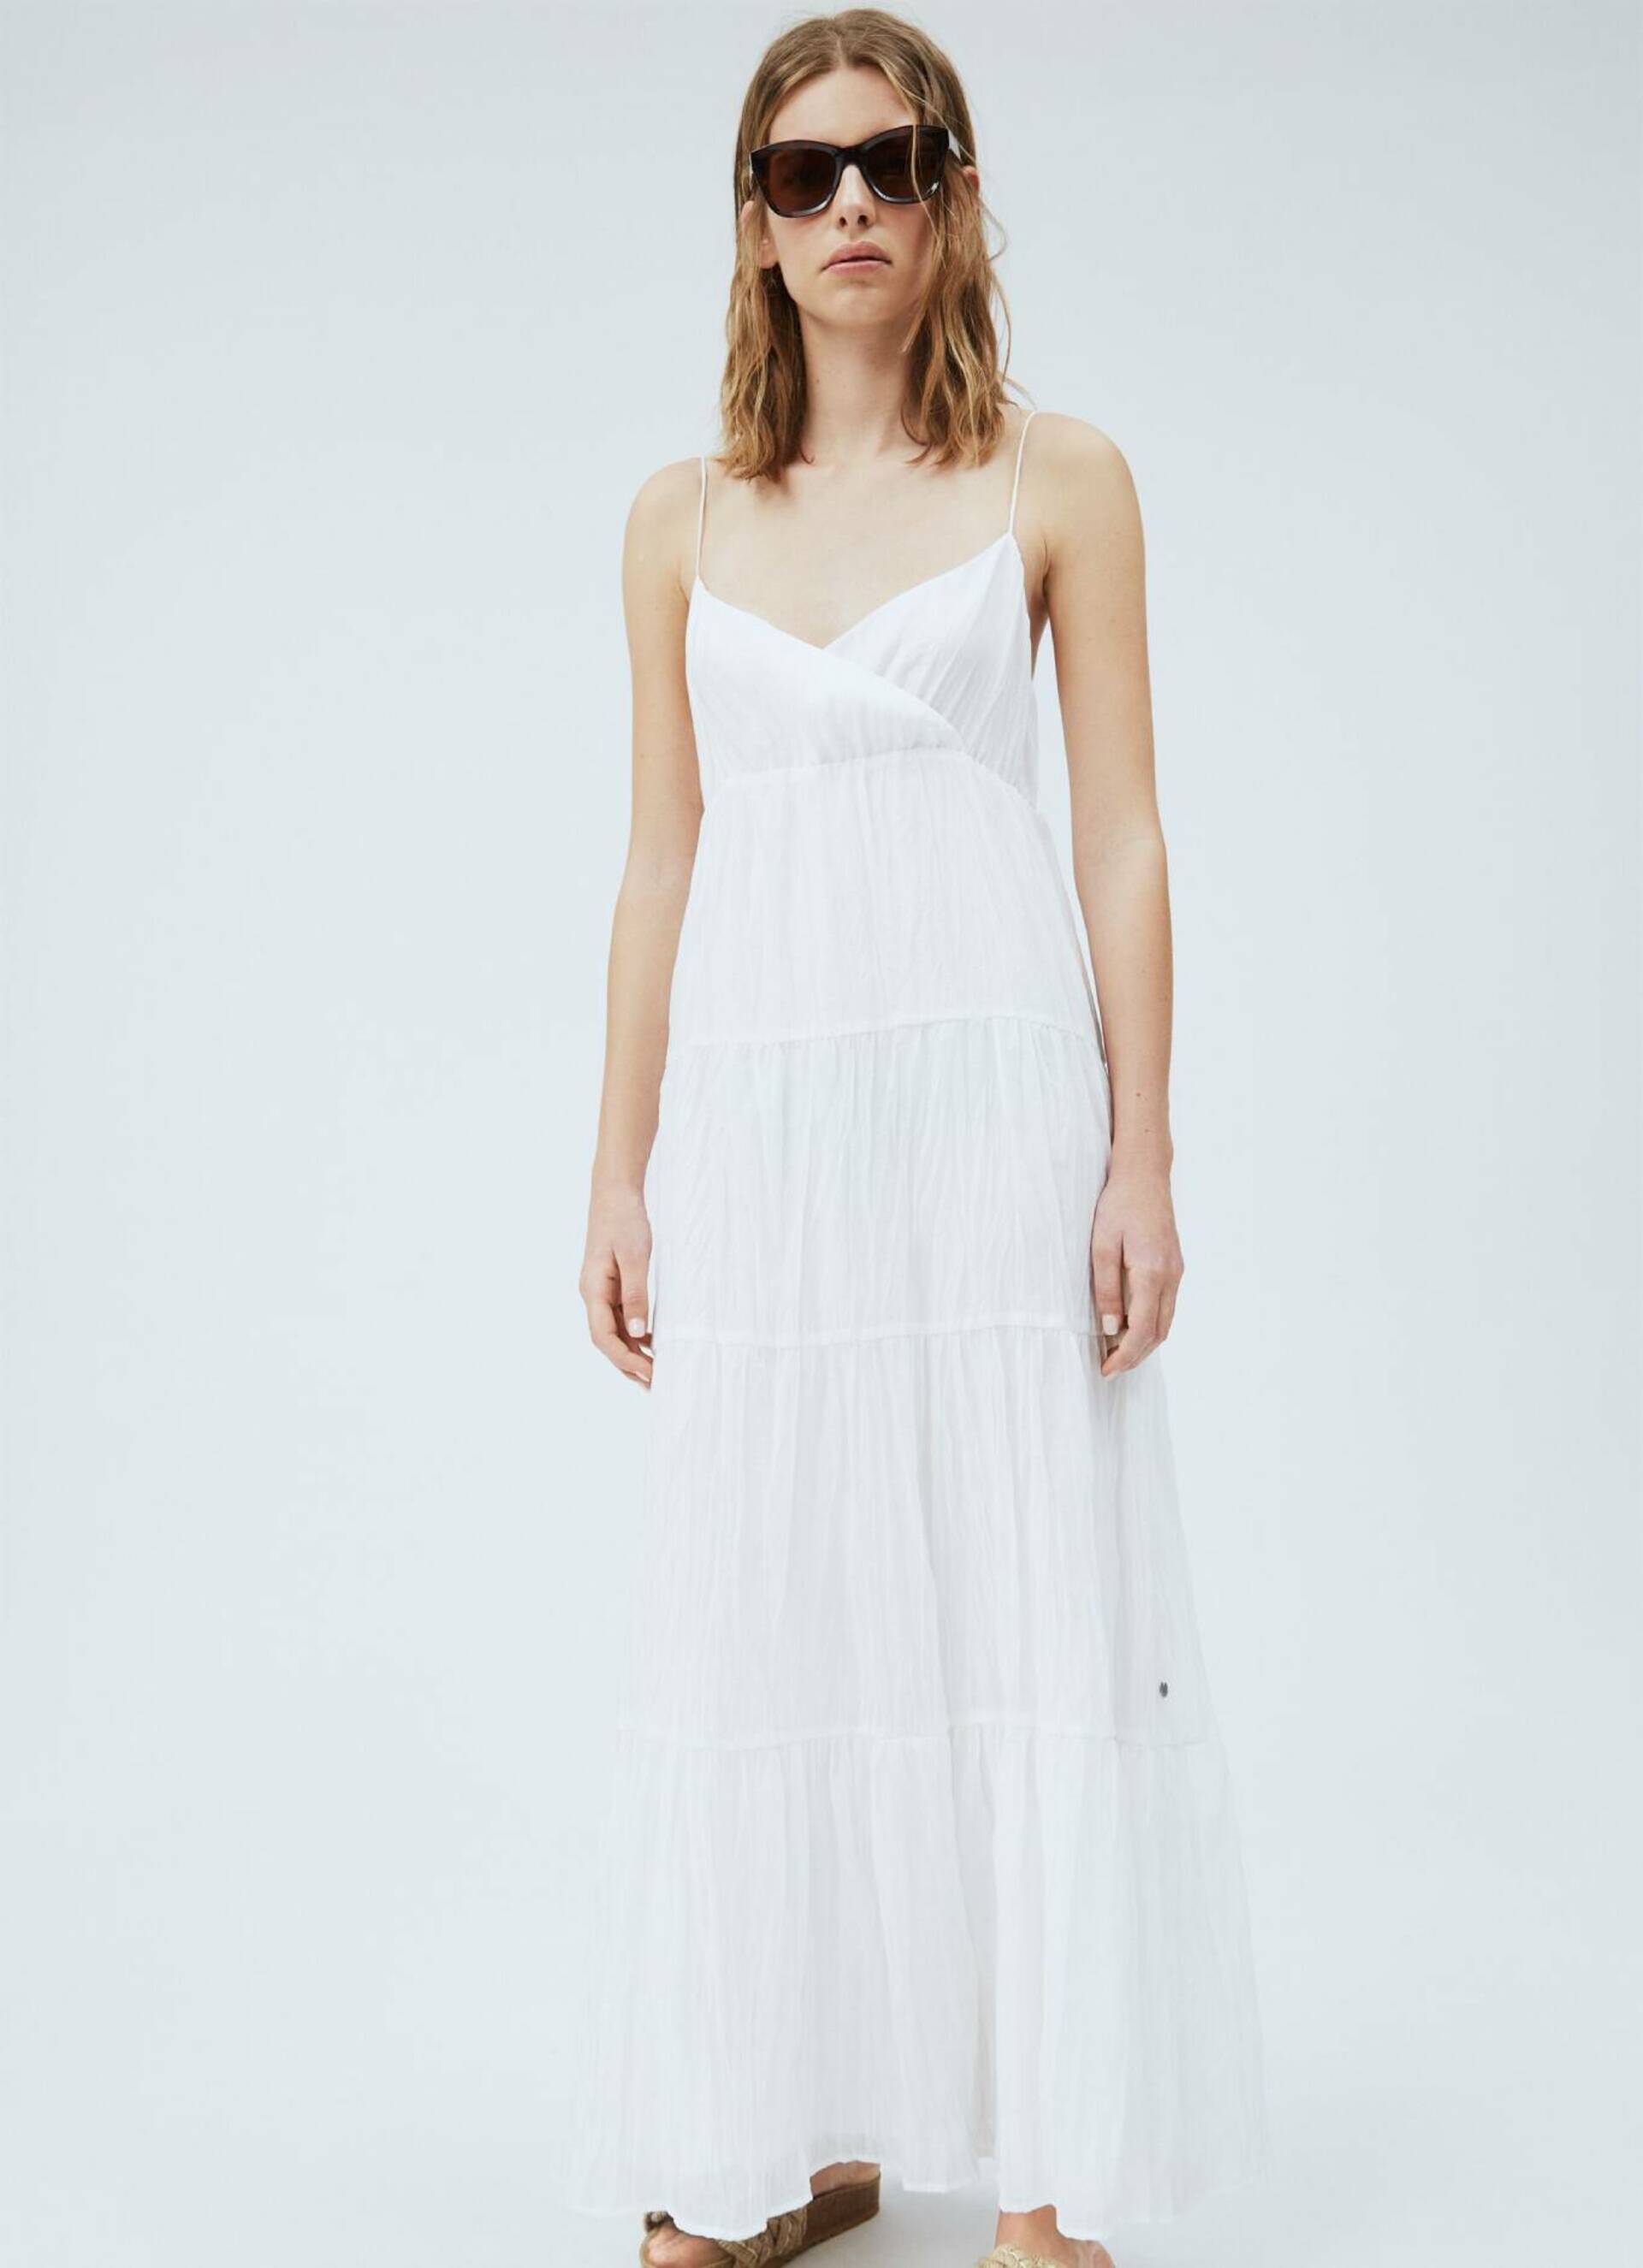 Pepe Jeans dámské bílé šaty Anae - M (803)